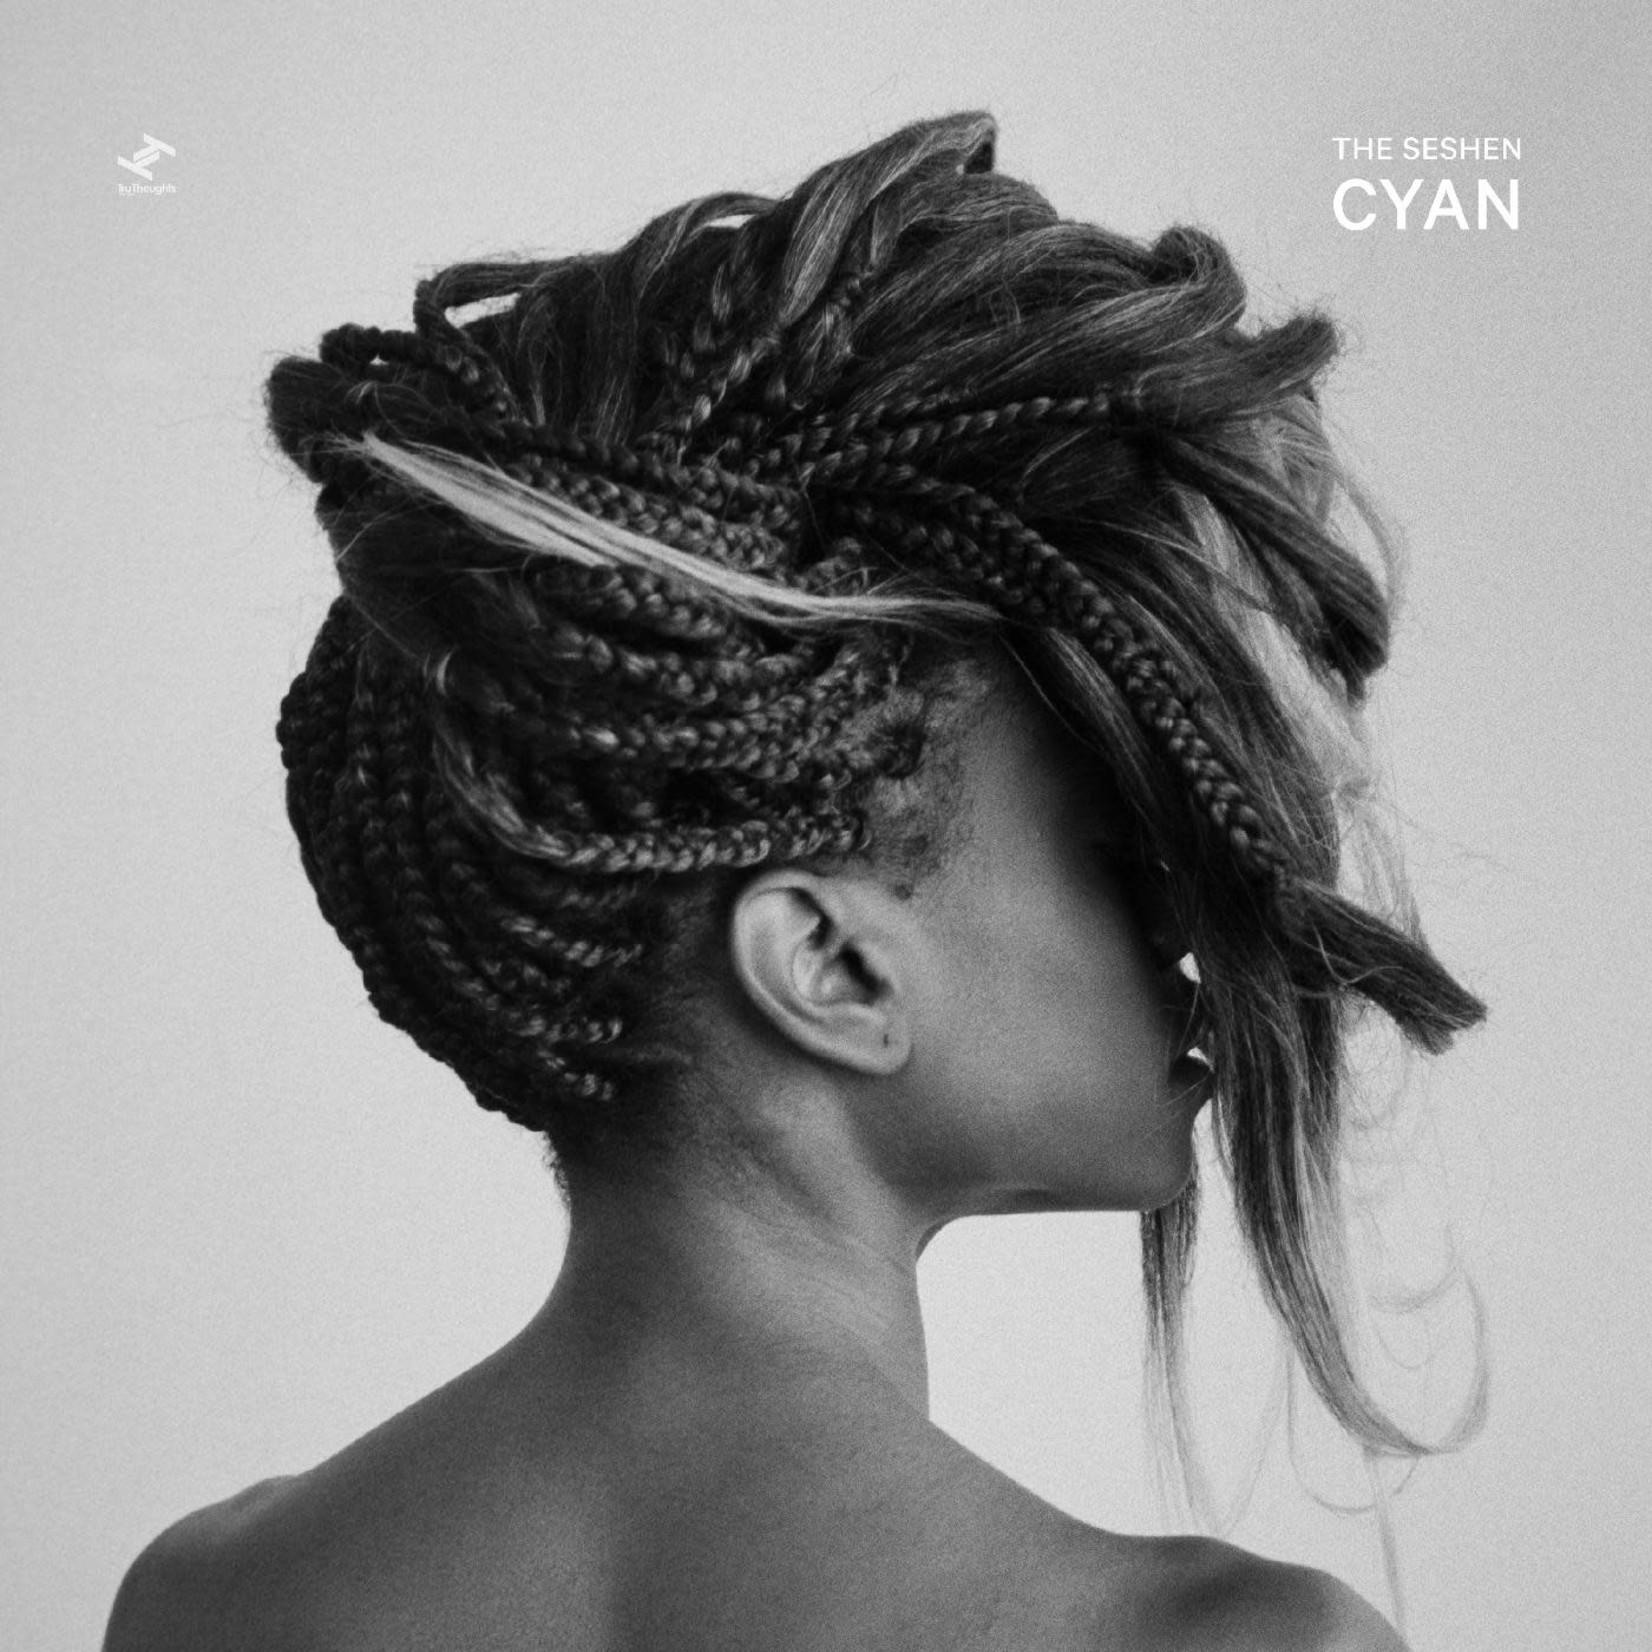 Tru Thoughts Seshen - Cyan (LP) [Cyan]